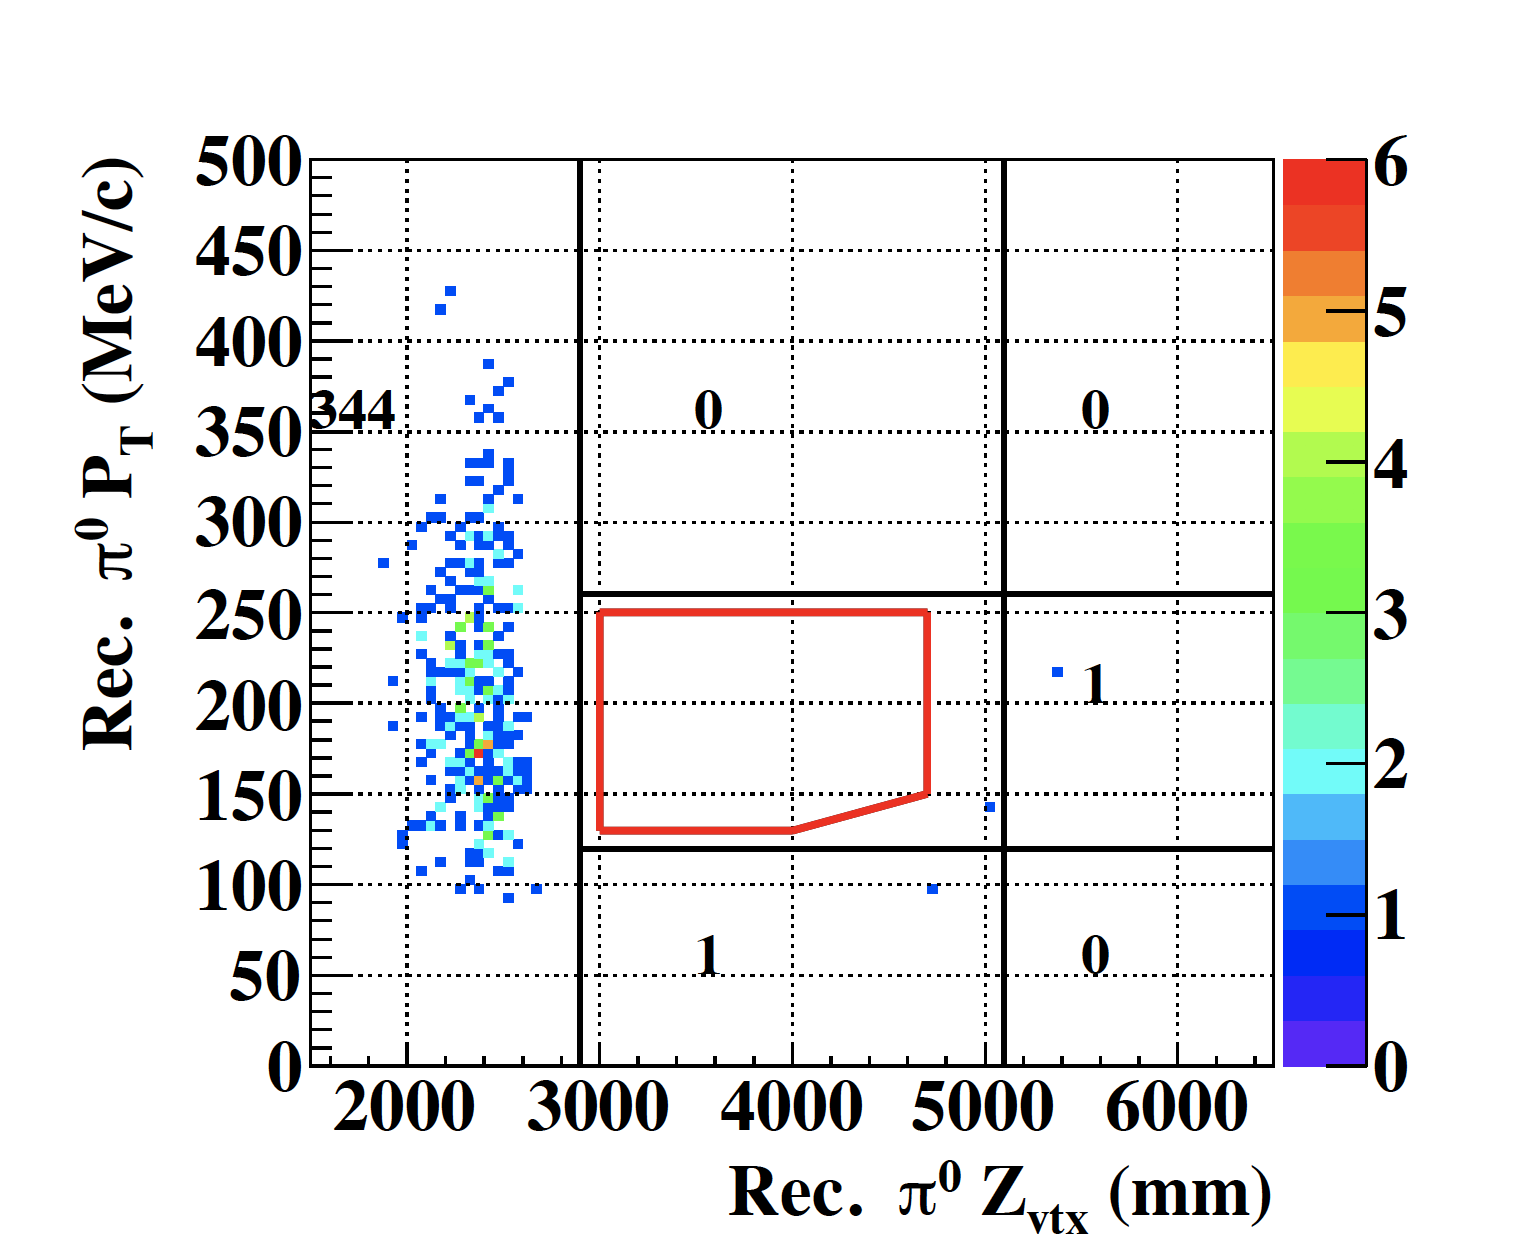 赤い線で囲った領域が稀崩壊モードのシグナル領域で、2015年のデータからは一事象も検出されなかった。横軸は中性π中間子の崩壊位置、縦軸は中性π中間子の横方向運動量